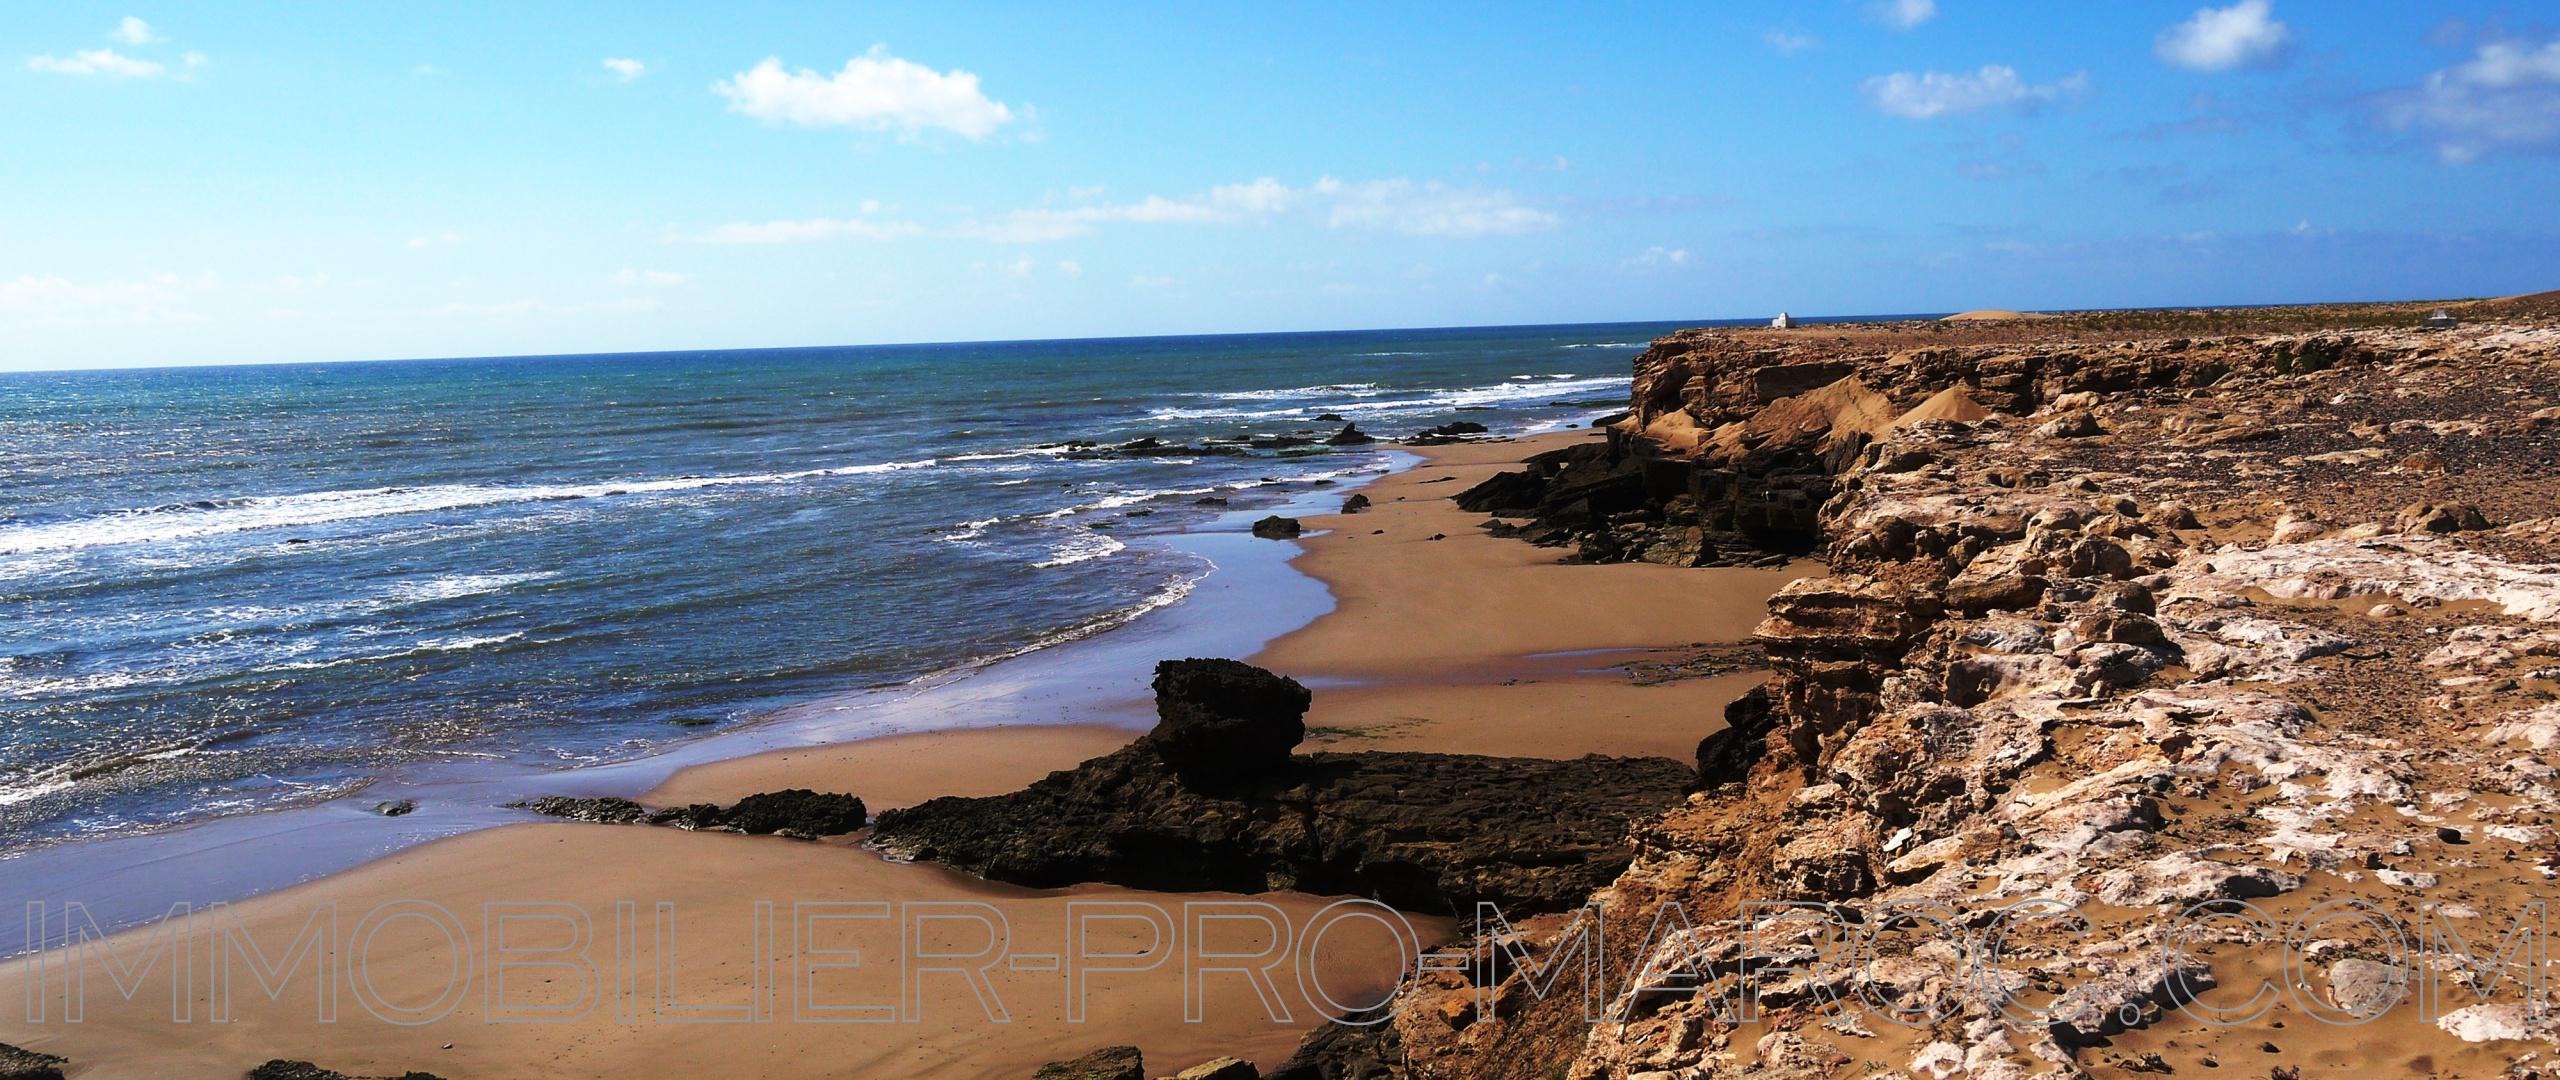 Fantastique emplacement, terrain de 3h2 front de mer à 25mns d'Essaoui